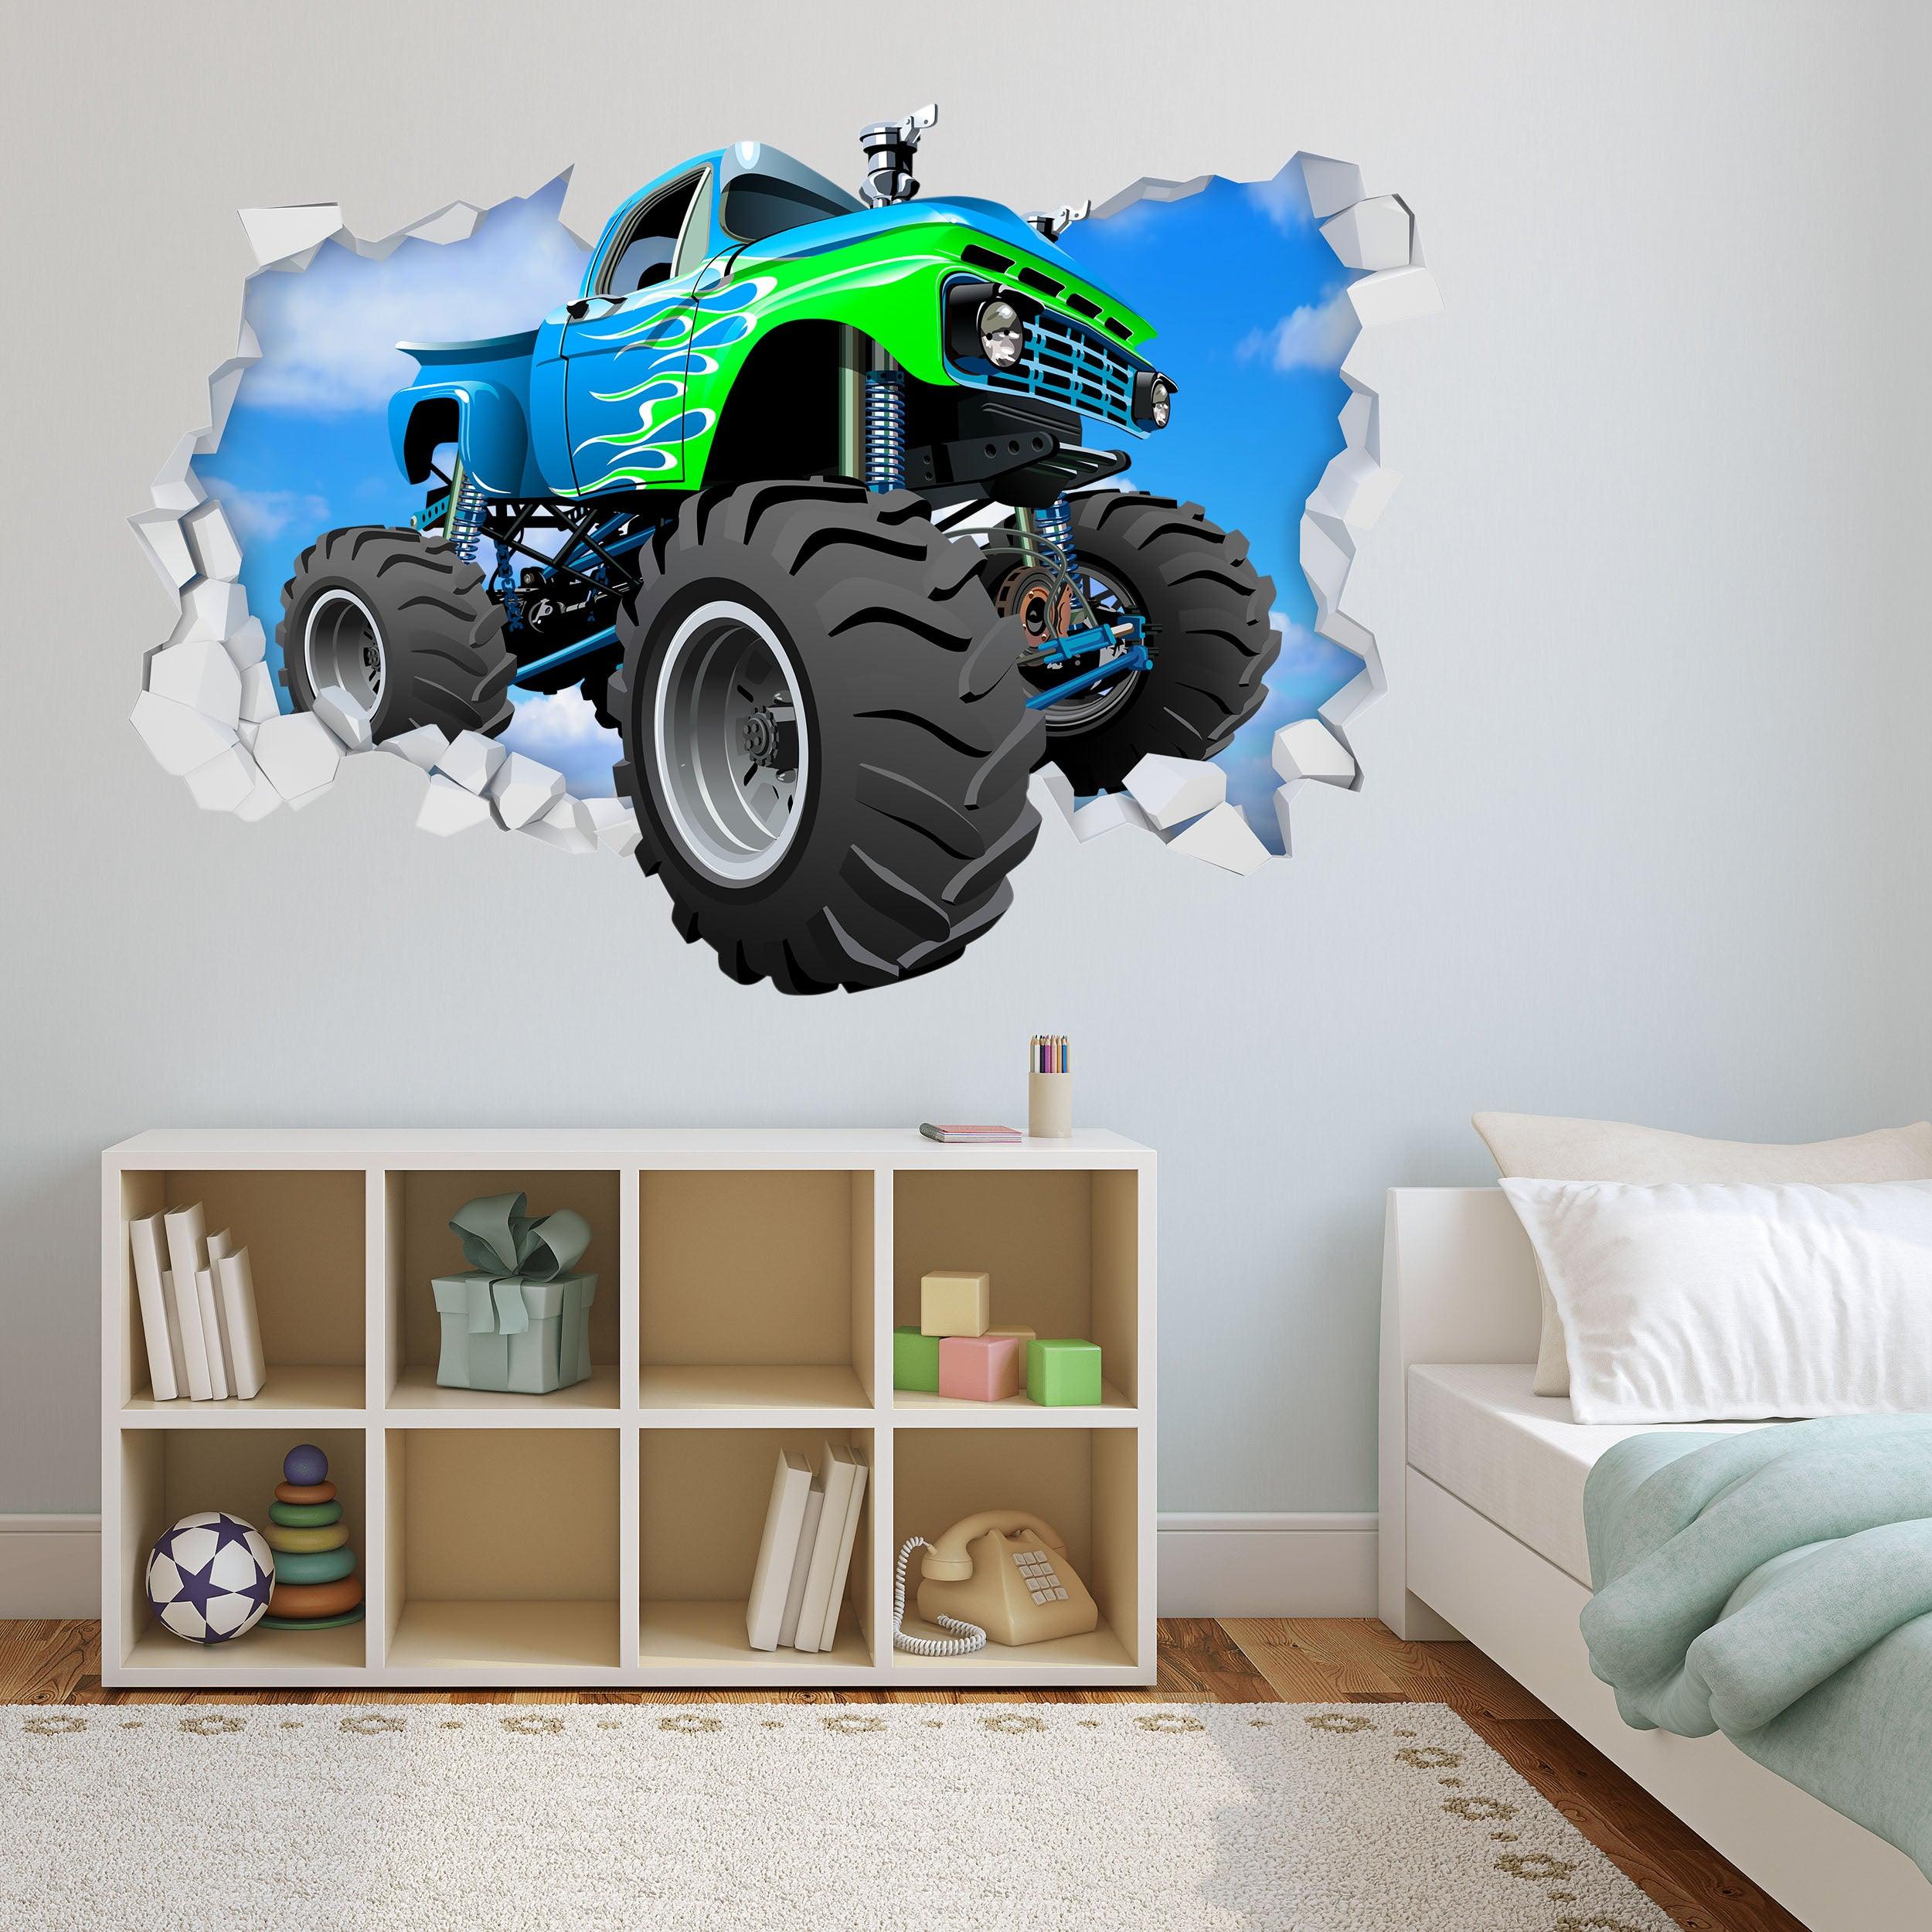 3D Green & Blue Monster Truck Breaking thru Wall, Wall Decal Sticker, Removable 108